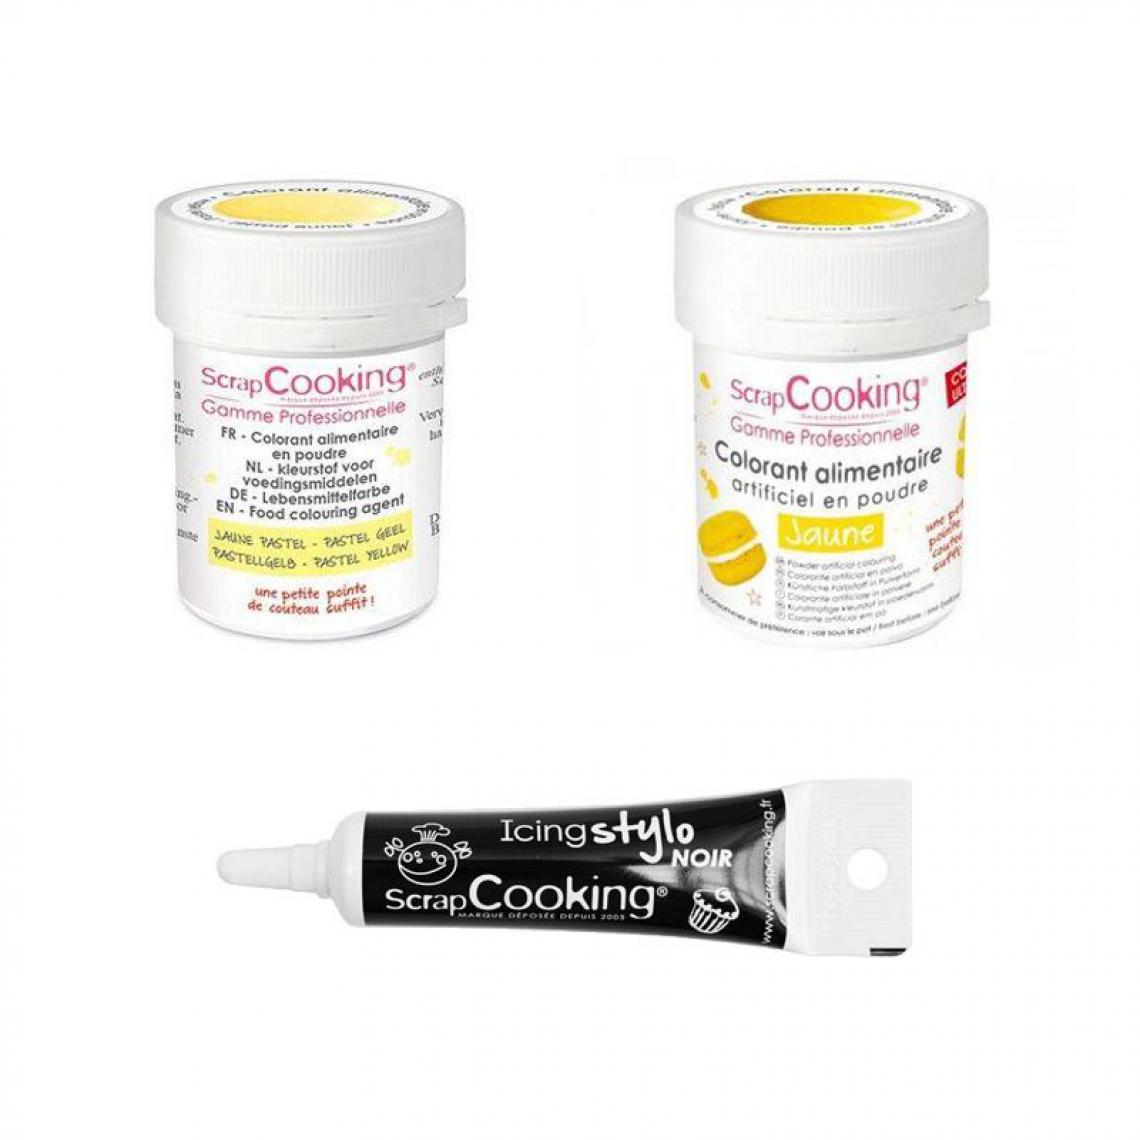 Scrapcooking - 2 colorants alimentaires jaune pastel-jaune + Stylo glaçage noir - Kits créatifs